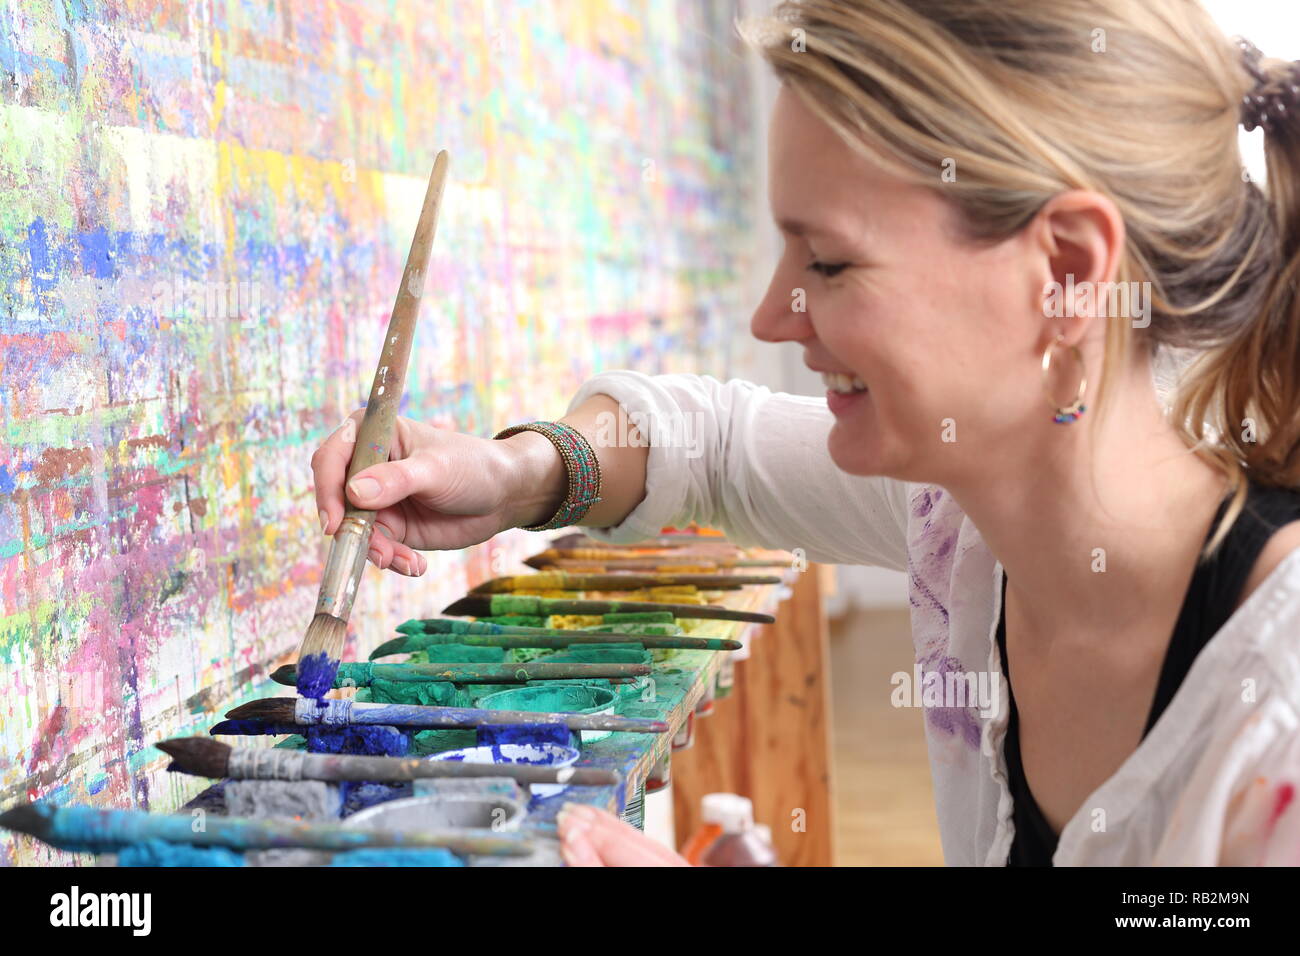 Une femme à l'esprit créatif avec la palette de peinture Banque D'Images